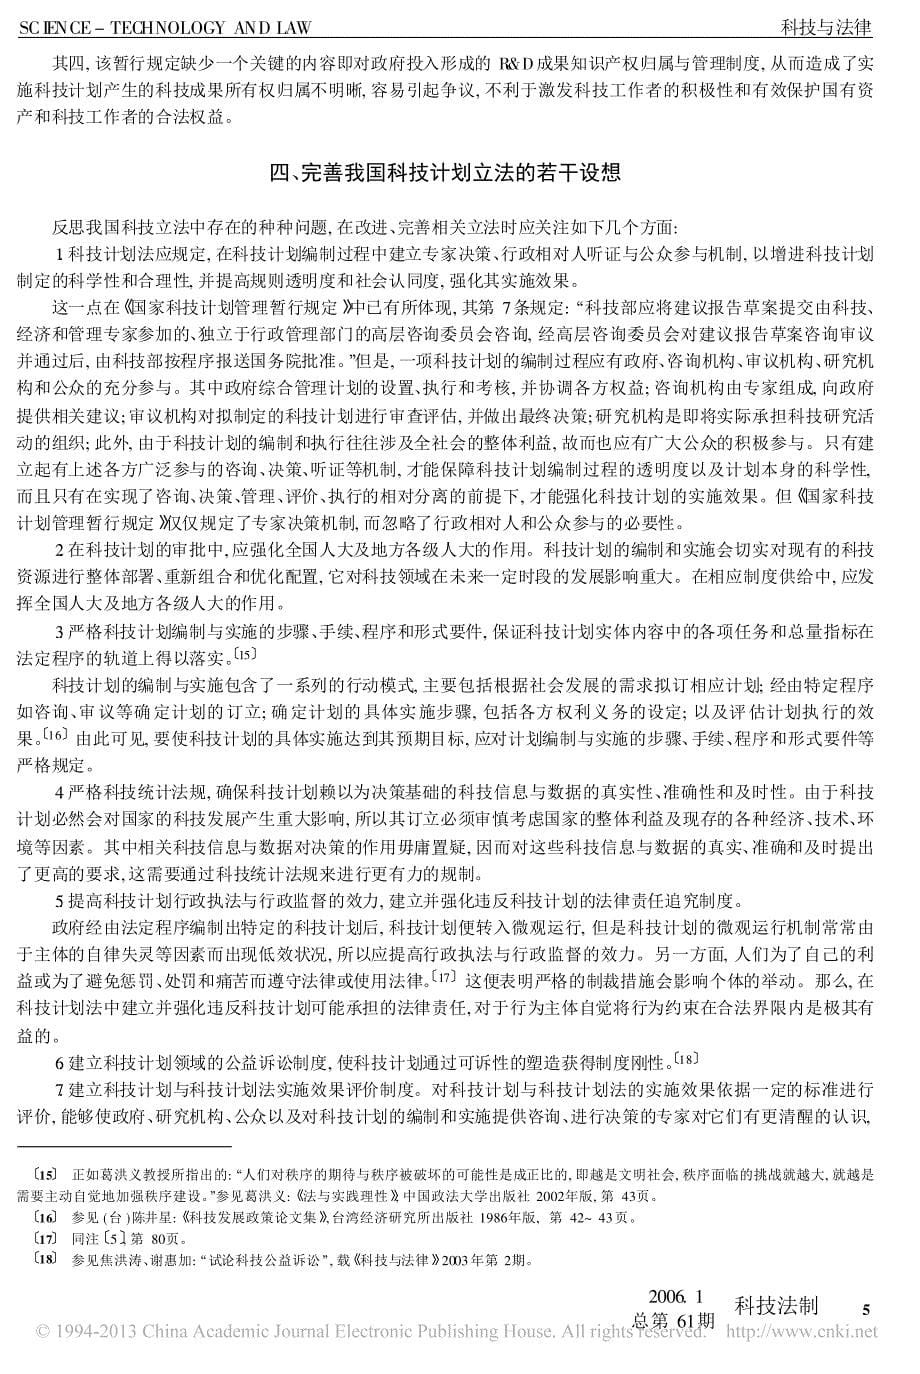 国家科技计划立法若干问题研究_焦洪涛_第5页